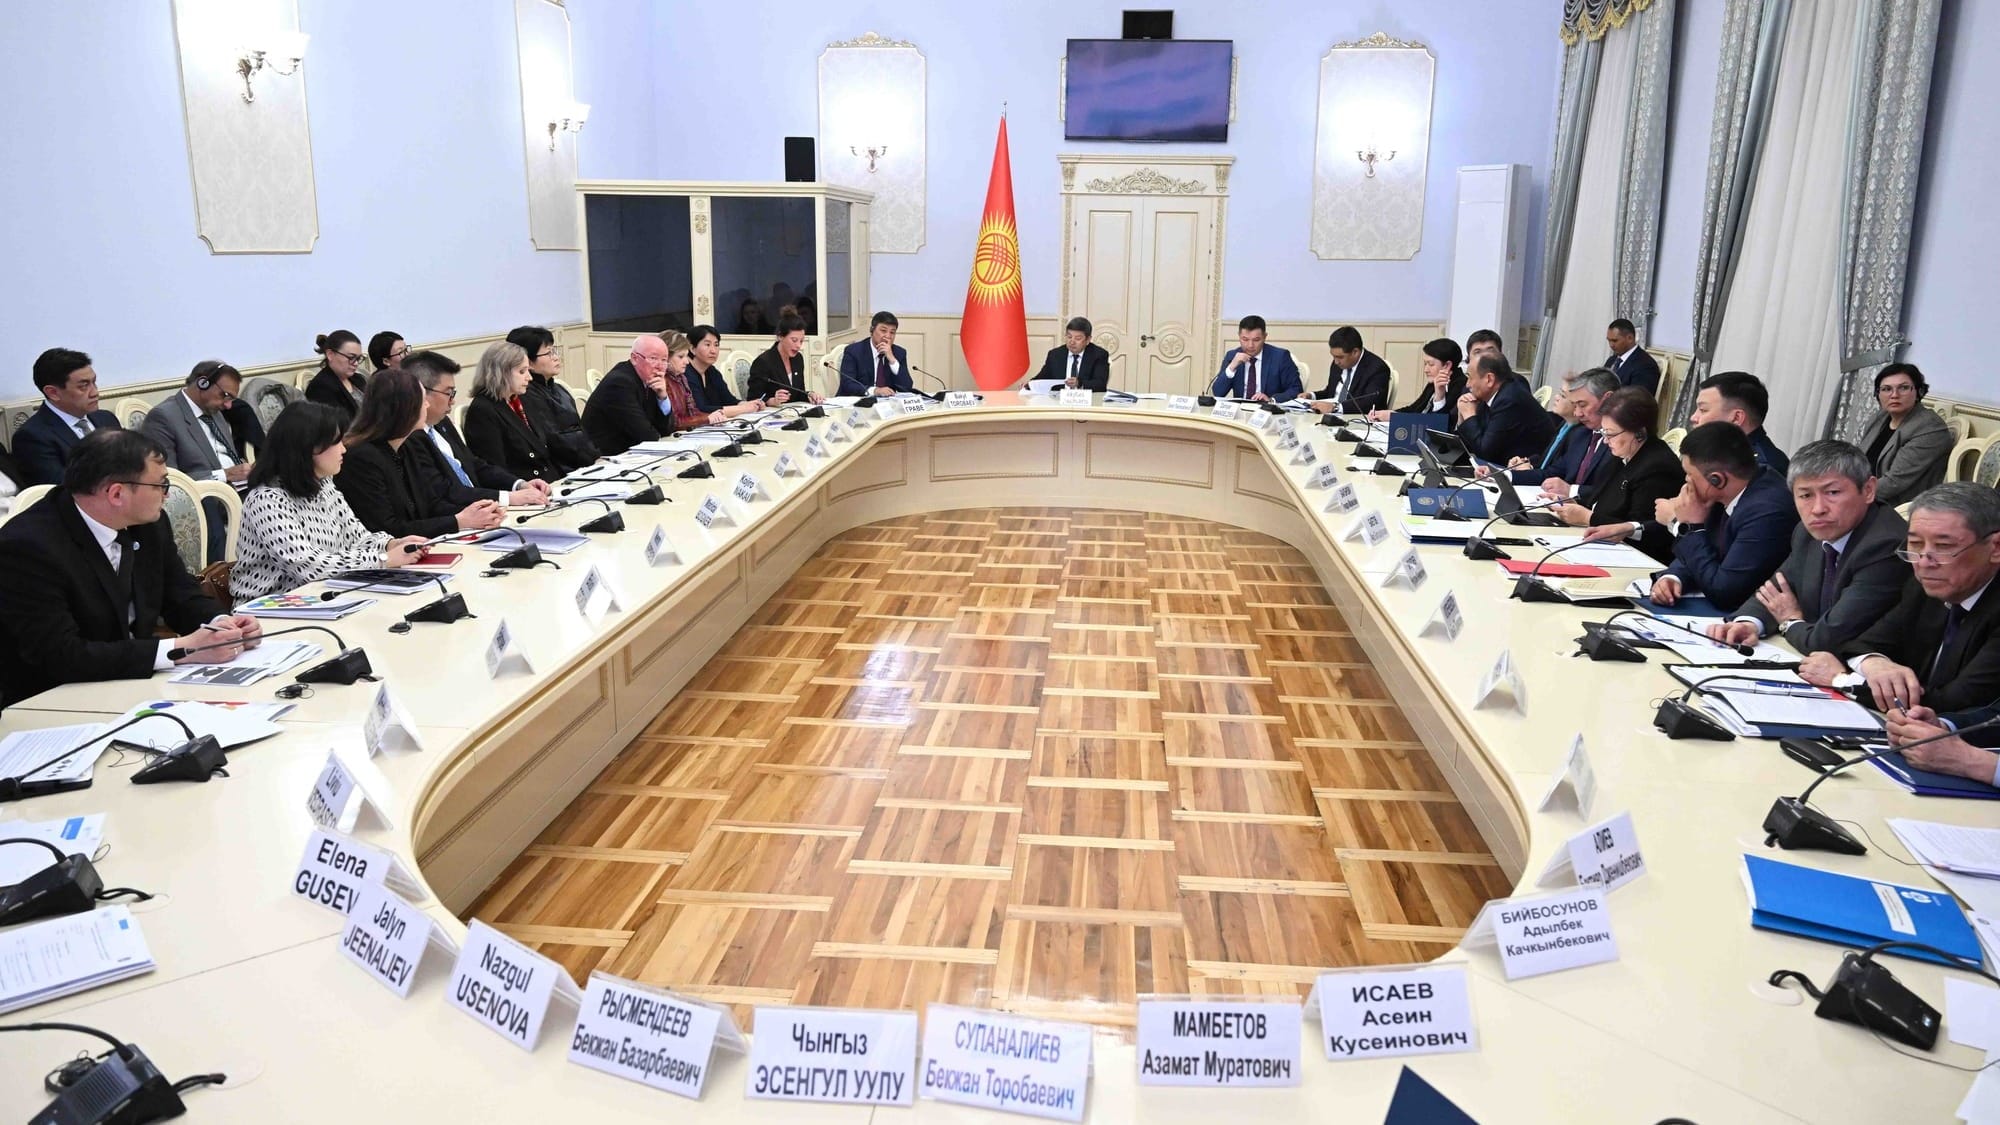 ООН планирует в текущем году направить на проекты в Кыргызстане $72 млн